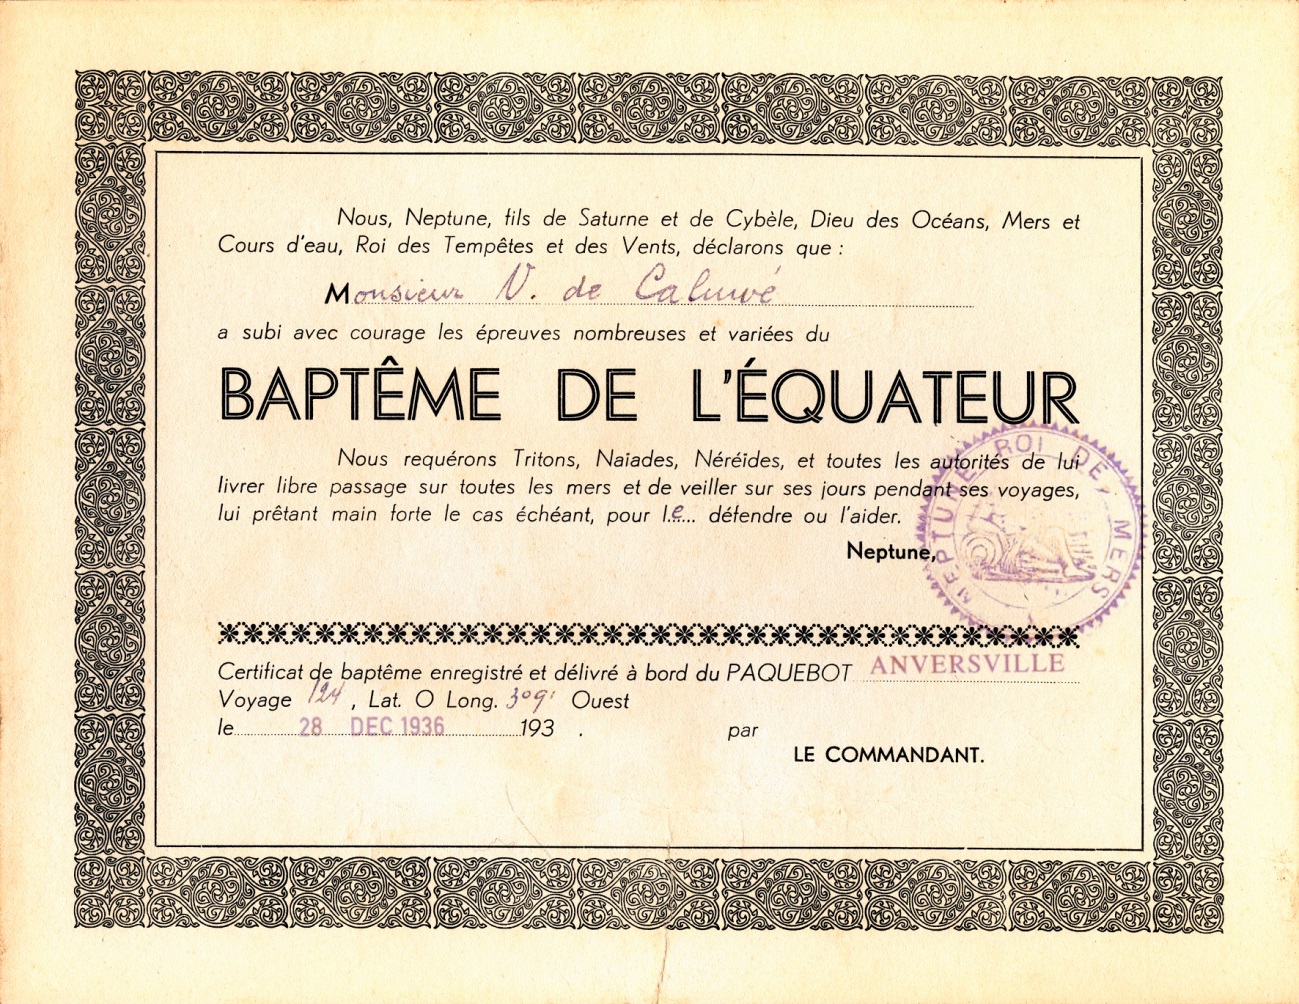 ss ANVERSVILLE, 1937 - Certificat de Baptême de l'équateur de Victor de Caluwé